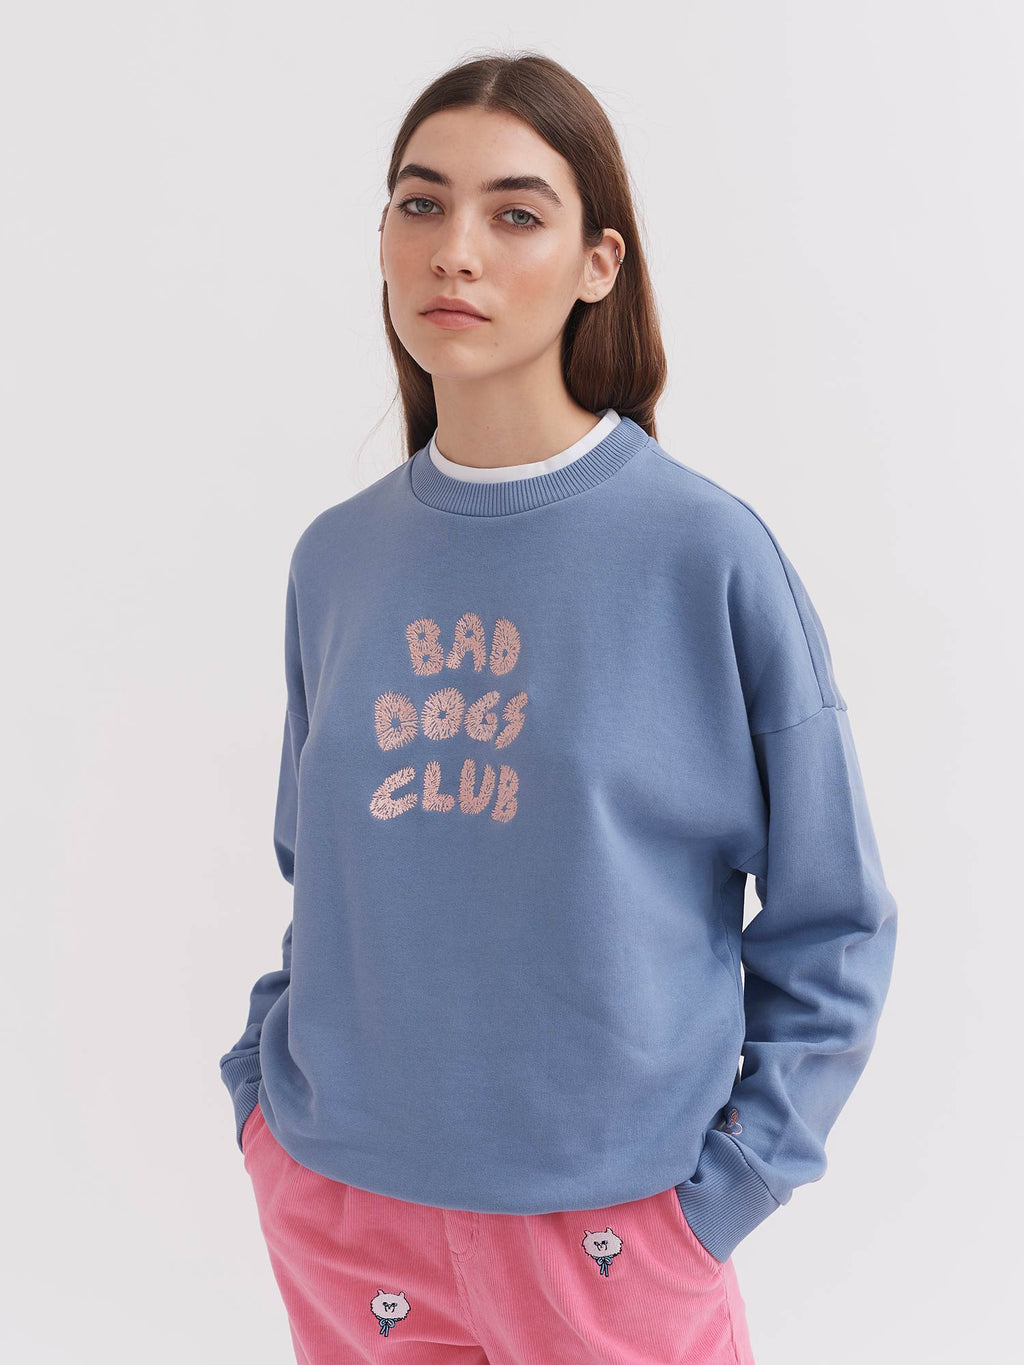 Lazy Oaf Bad Dogs Club Sweatshirt